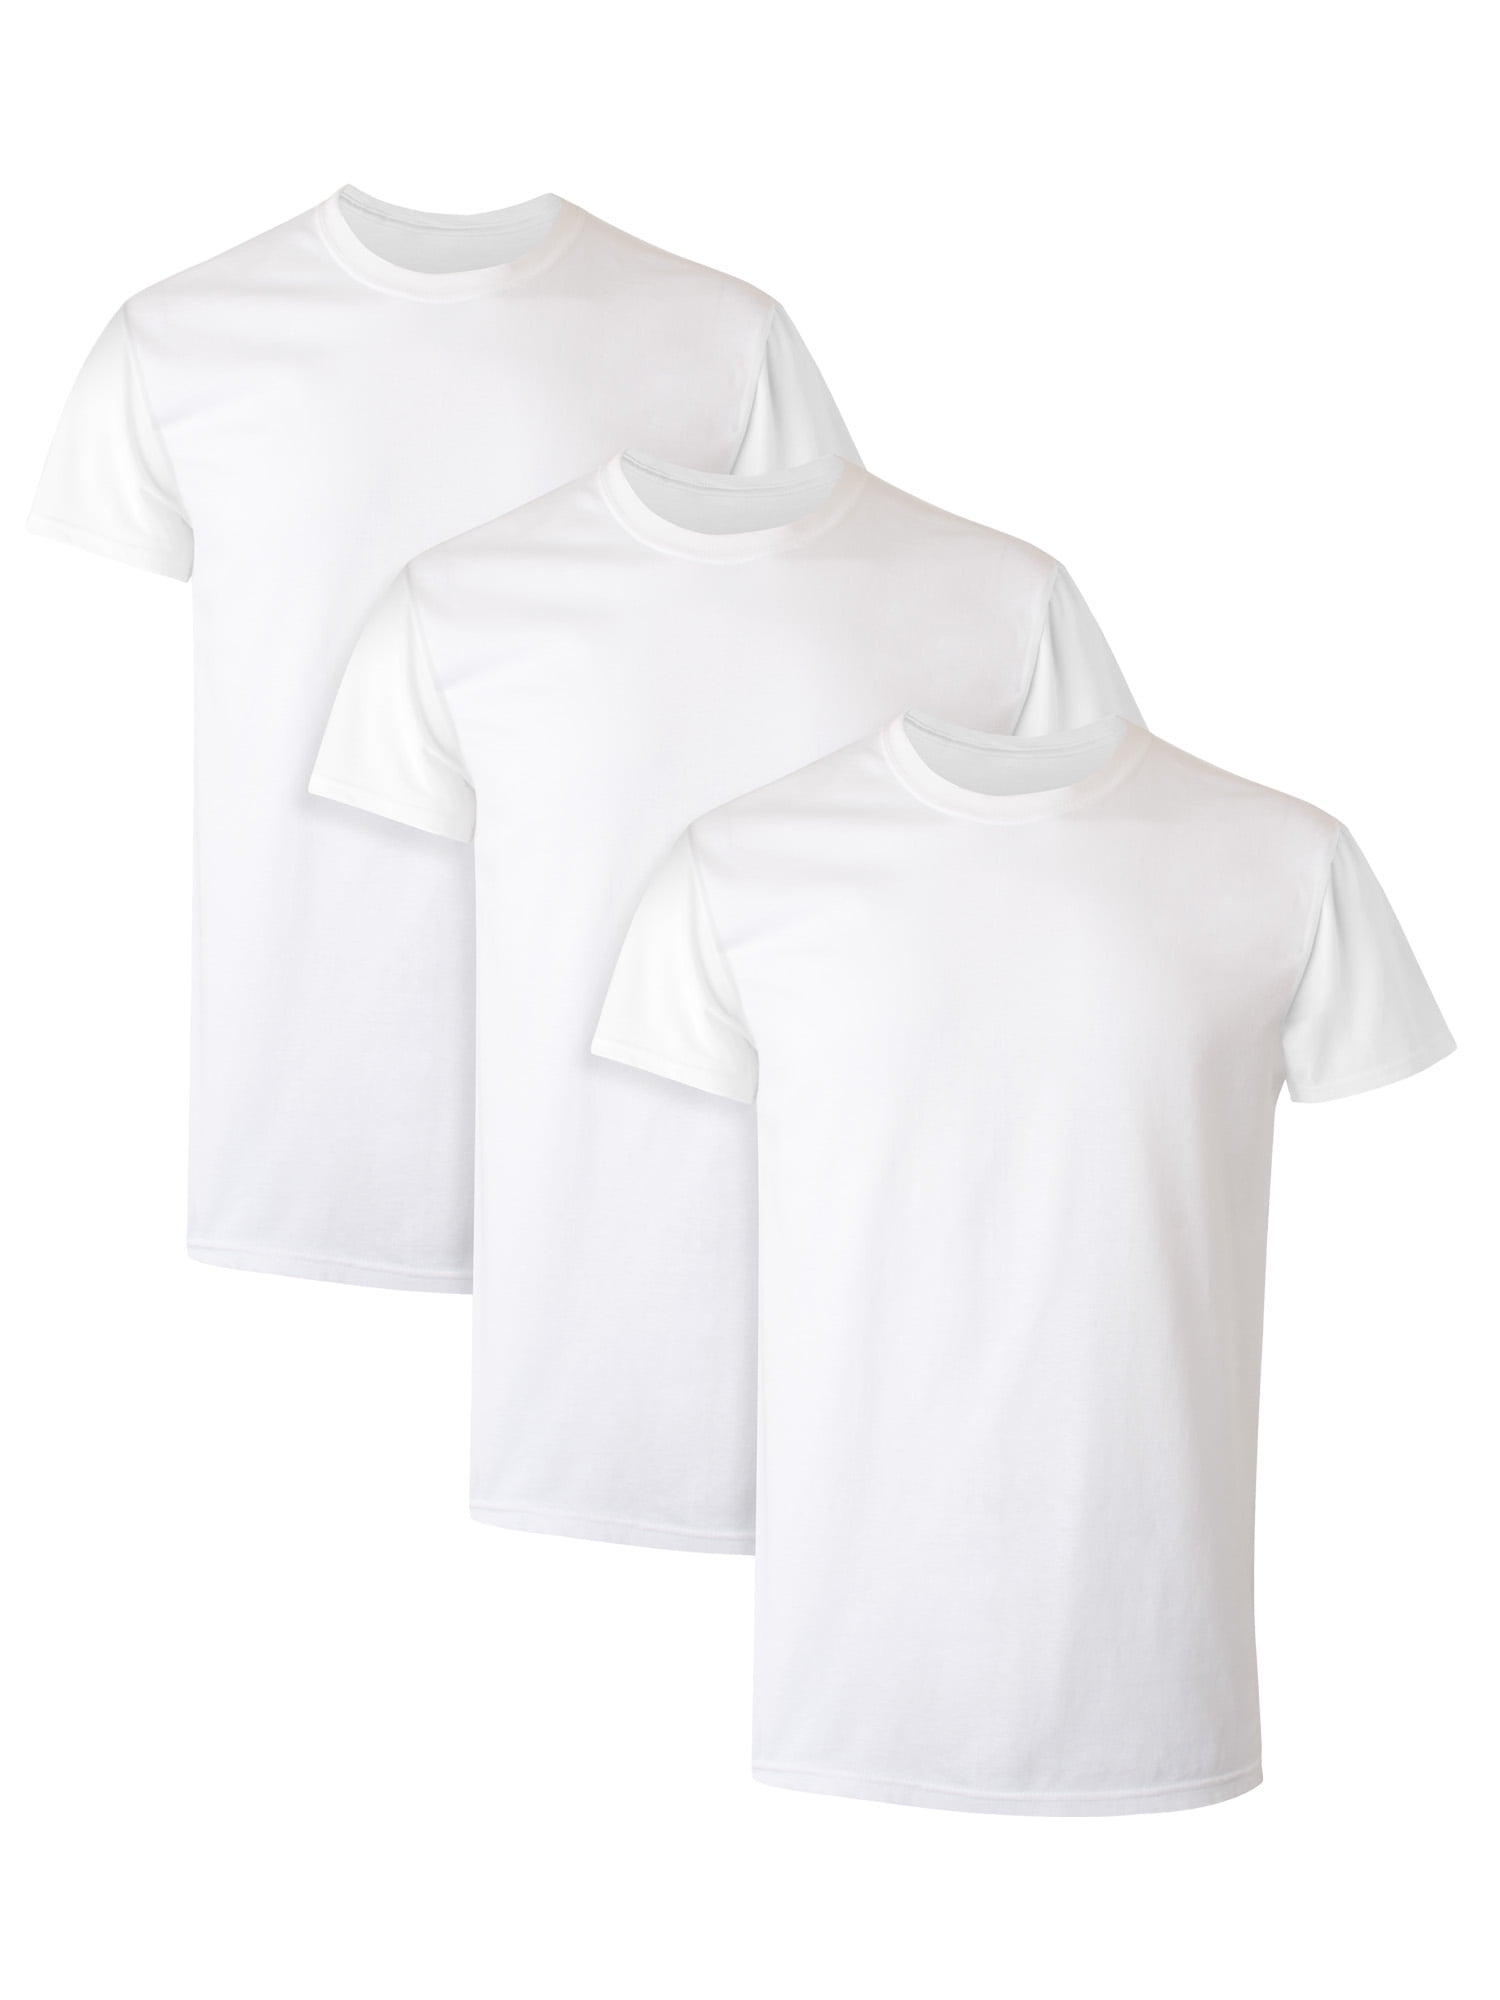 Men's White Crew T-Shirt Undershirts, 3 -